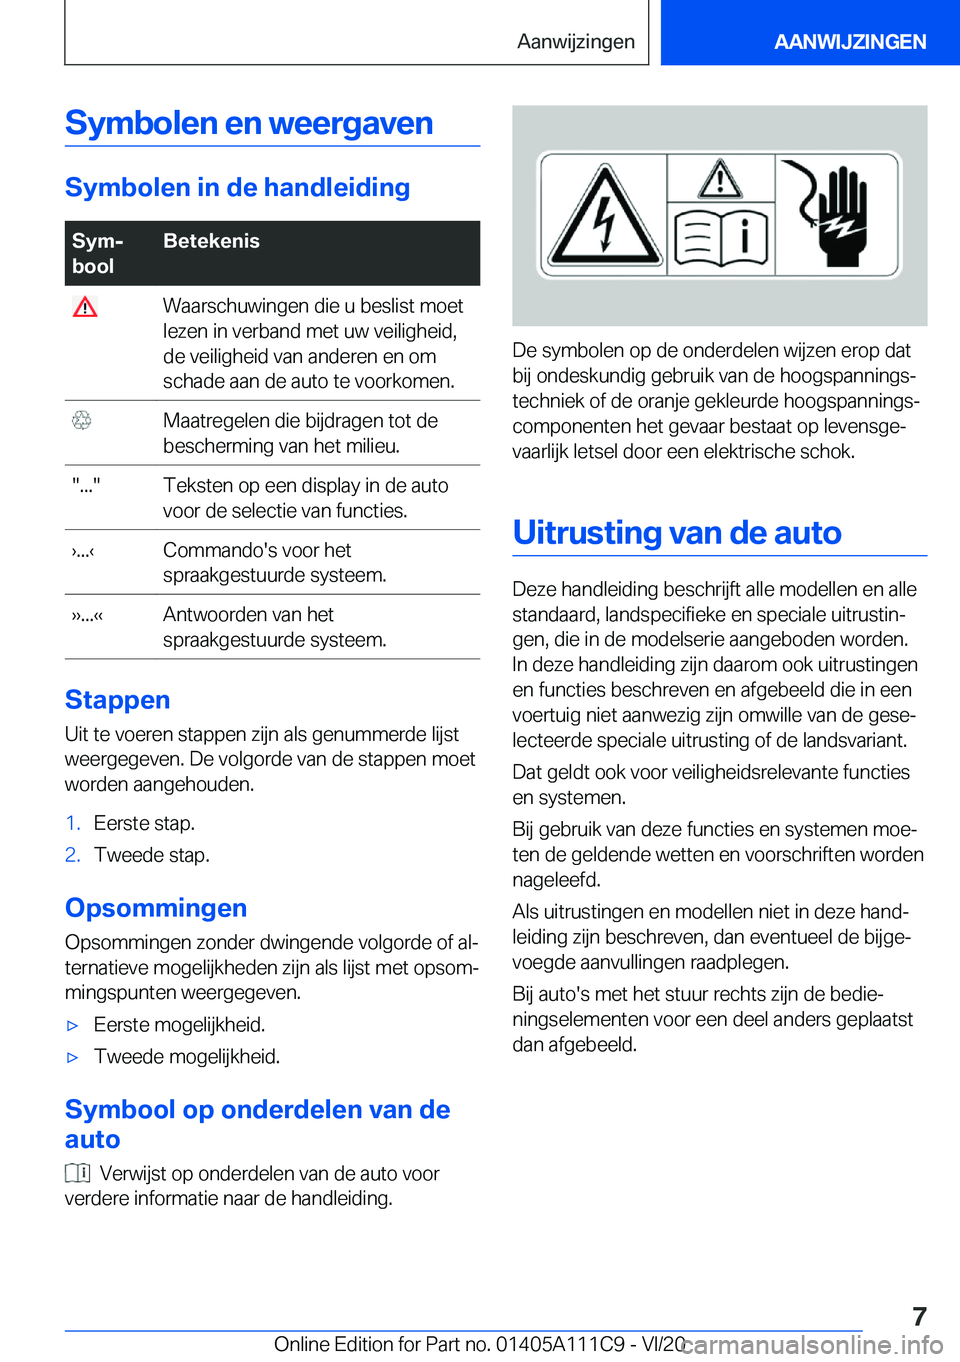 BMW 3 SERIES SEDAN PLUG-IN HYBRID 2021  Instructieboekjes (in Dutch) �S�y�m�b�o�l�e�n��e�n��w�e�e�r�g�a�v�e�n
�S�y�m�b�o�l�e�n��i�n��d�e��h�a�n�d�l�e�i�d�i�n�g
�S�y�mj
�b�o�o�l�B�e�t�e�k�e�n�i�s��W�a�a�r�s�c�h�u�w�i�n�g�e�n��d�i�e��u��b�e�s�l�i�s�t��m�o�e�t
